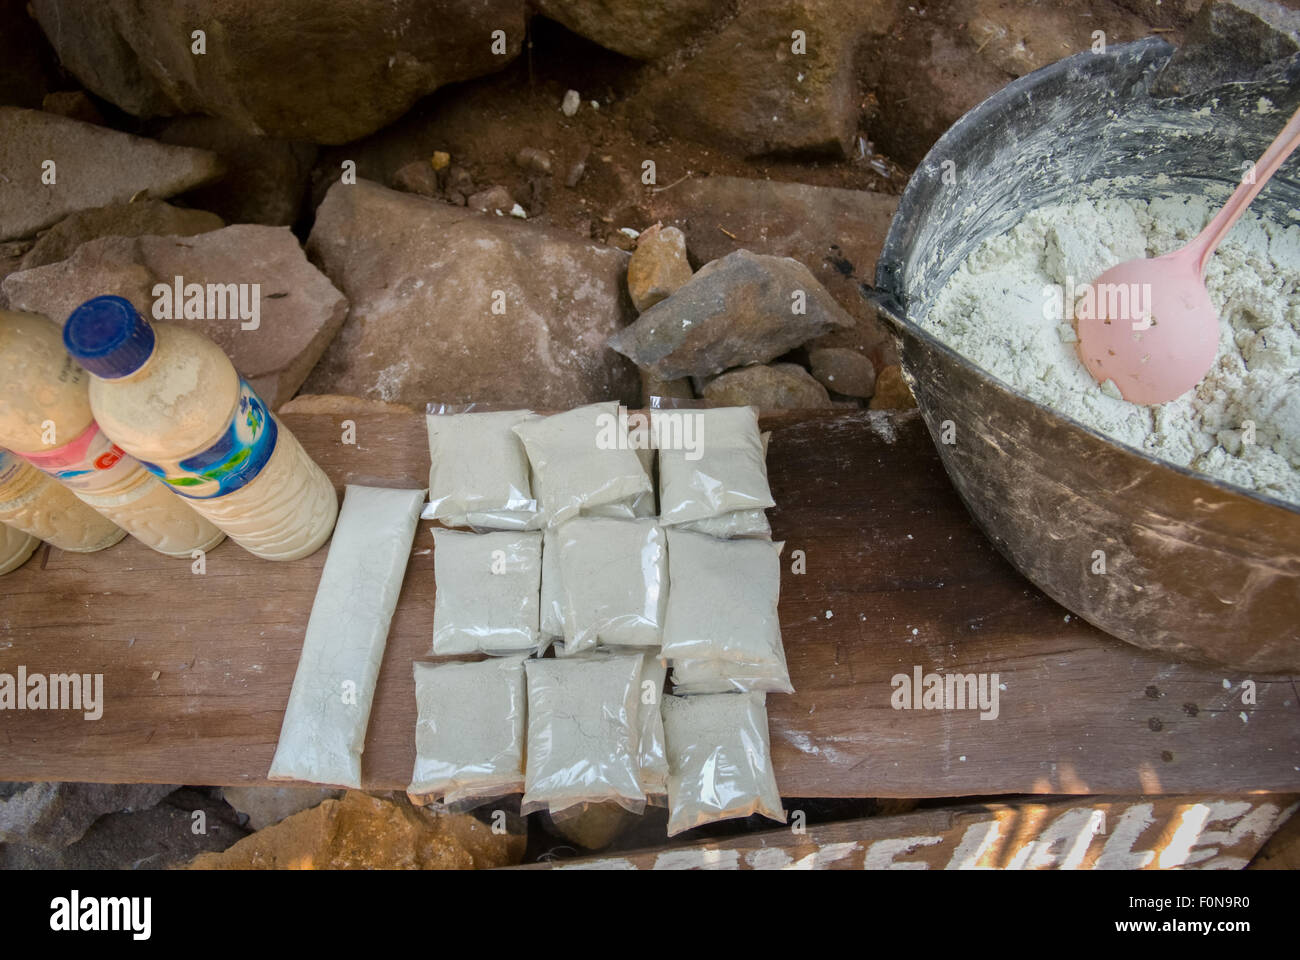 Des paquets de poudre de soufre, qui auraient des effets curatifs sur les soins de la peau, sont vendus dans un magasin près d'une source chaude à Lampung, en Indonésie. Banque D'Images